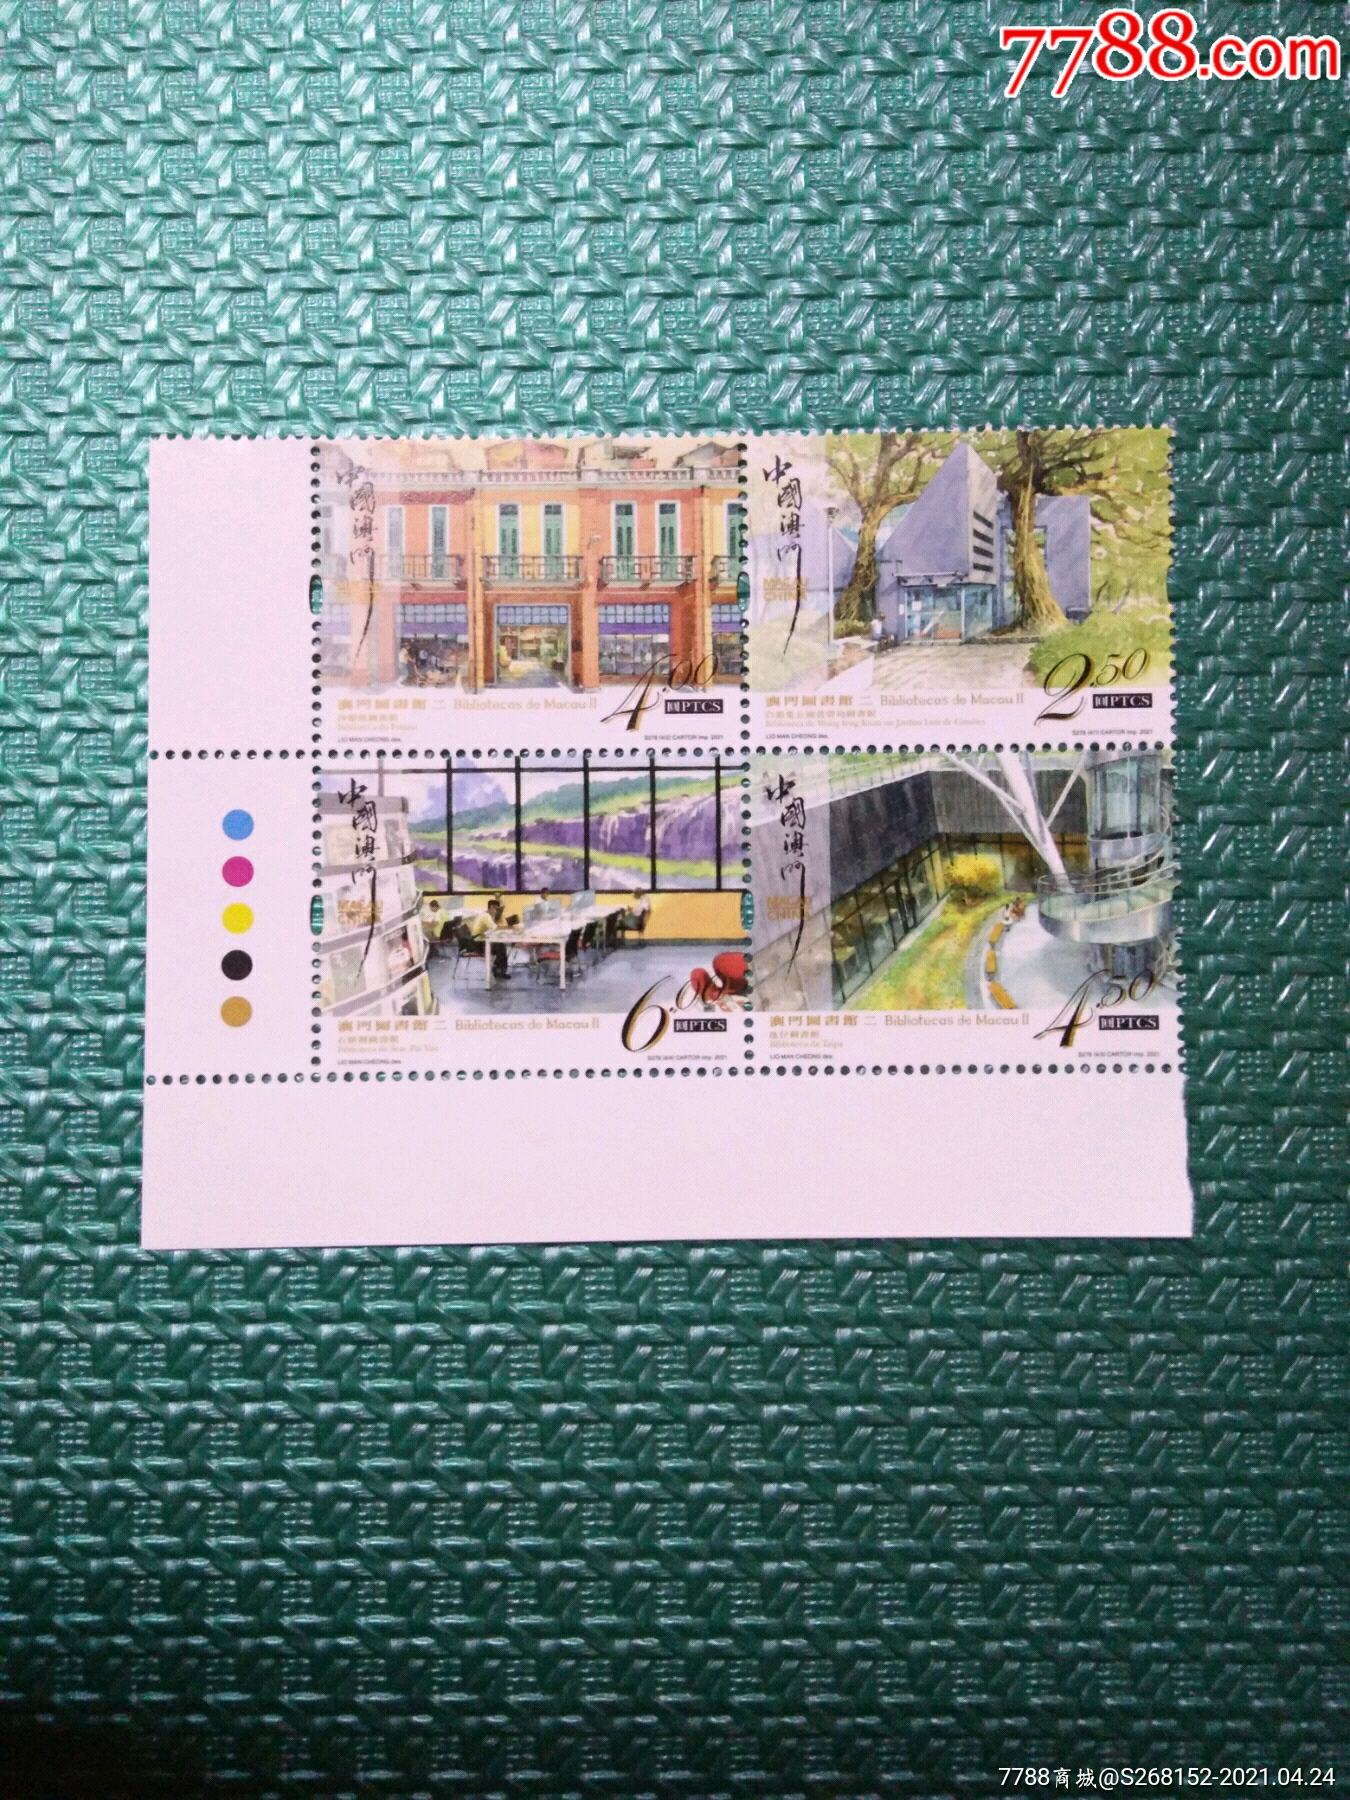 澳门大学邮票图片